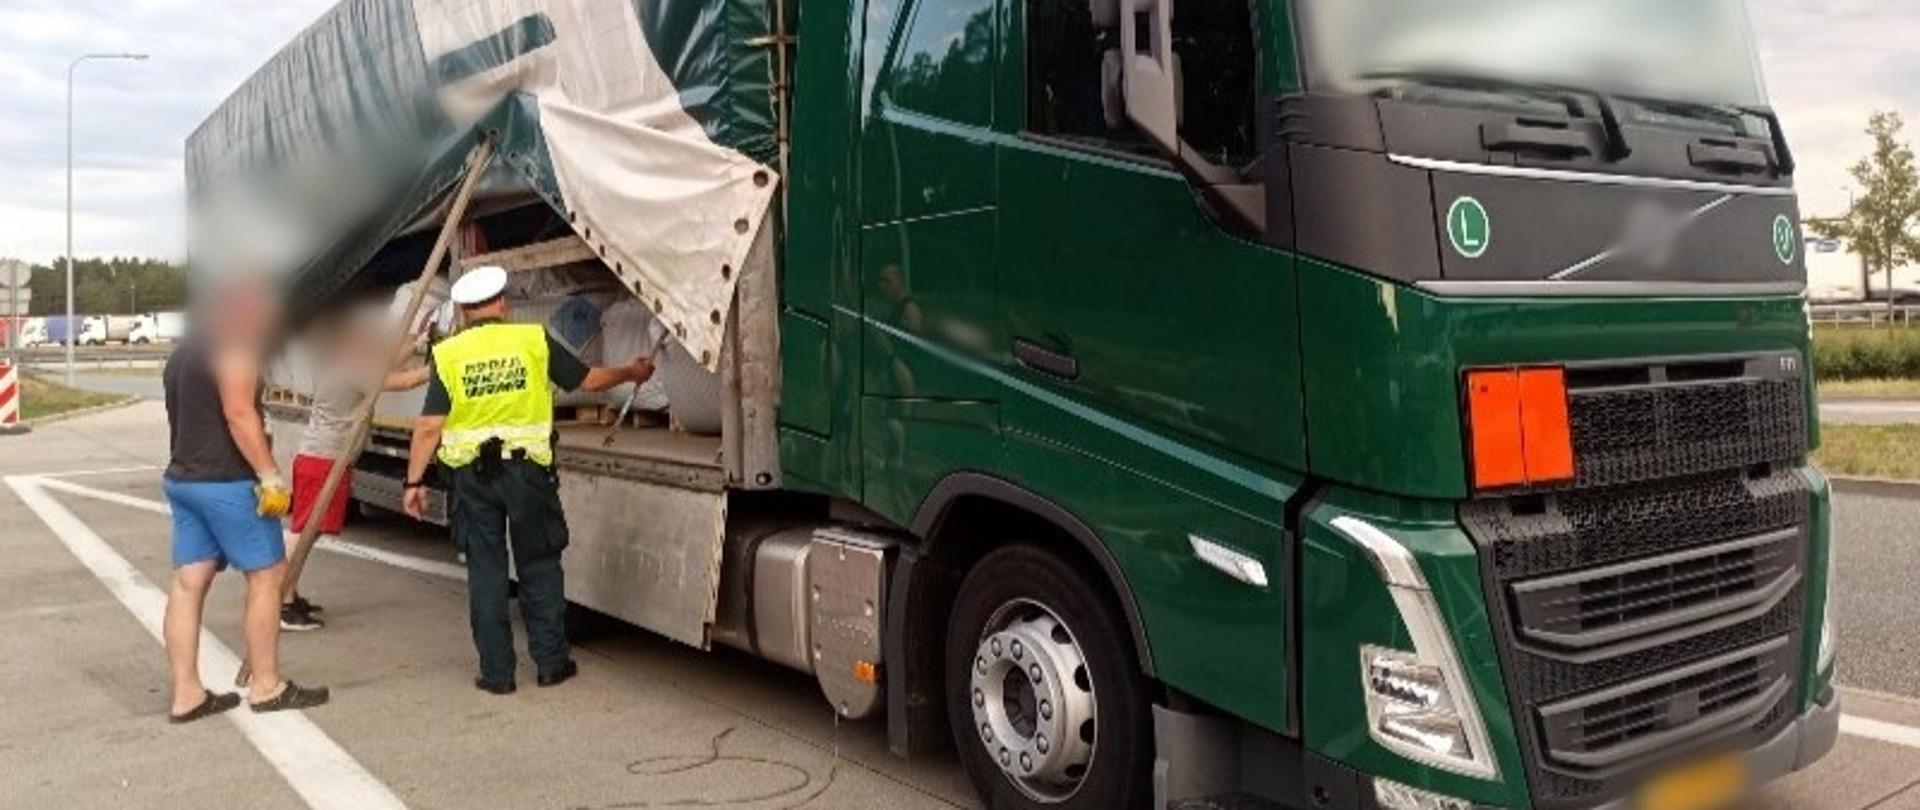 Zatrzymany do kontroli drogowej zestaw ciężarowy oznaczony pomarańczową tablicą z przodu (ADR). Inspektor stoi obok plandeki podniesionej na naczepie przez kierowców ciężarówki i kontroluje, co jest przewożone w ładowni. 